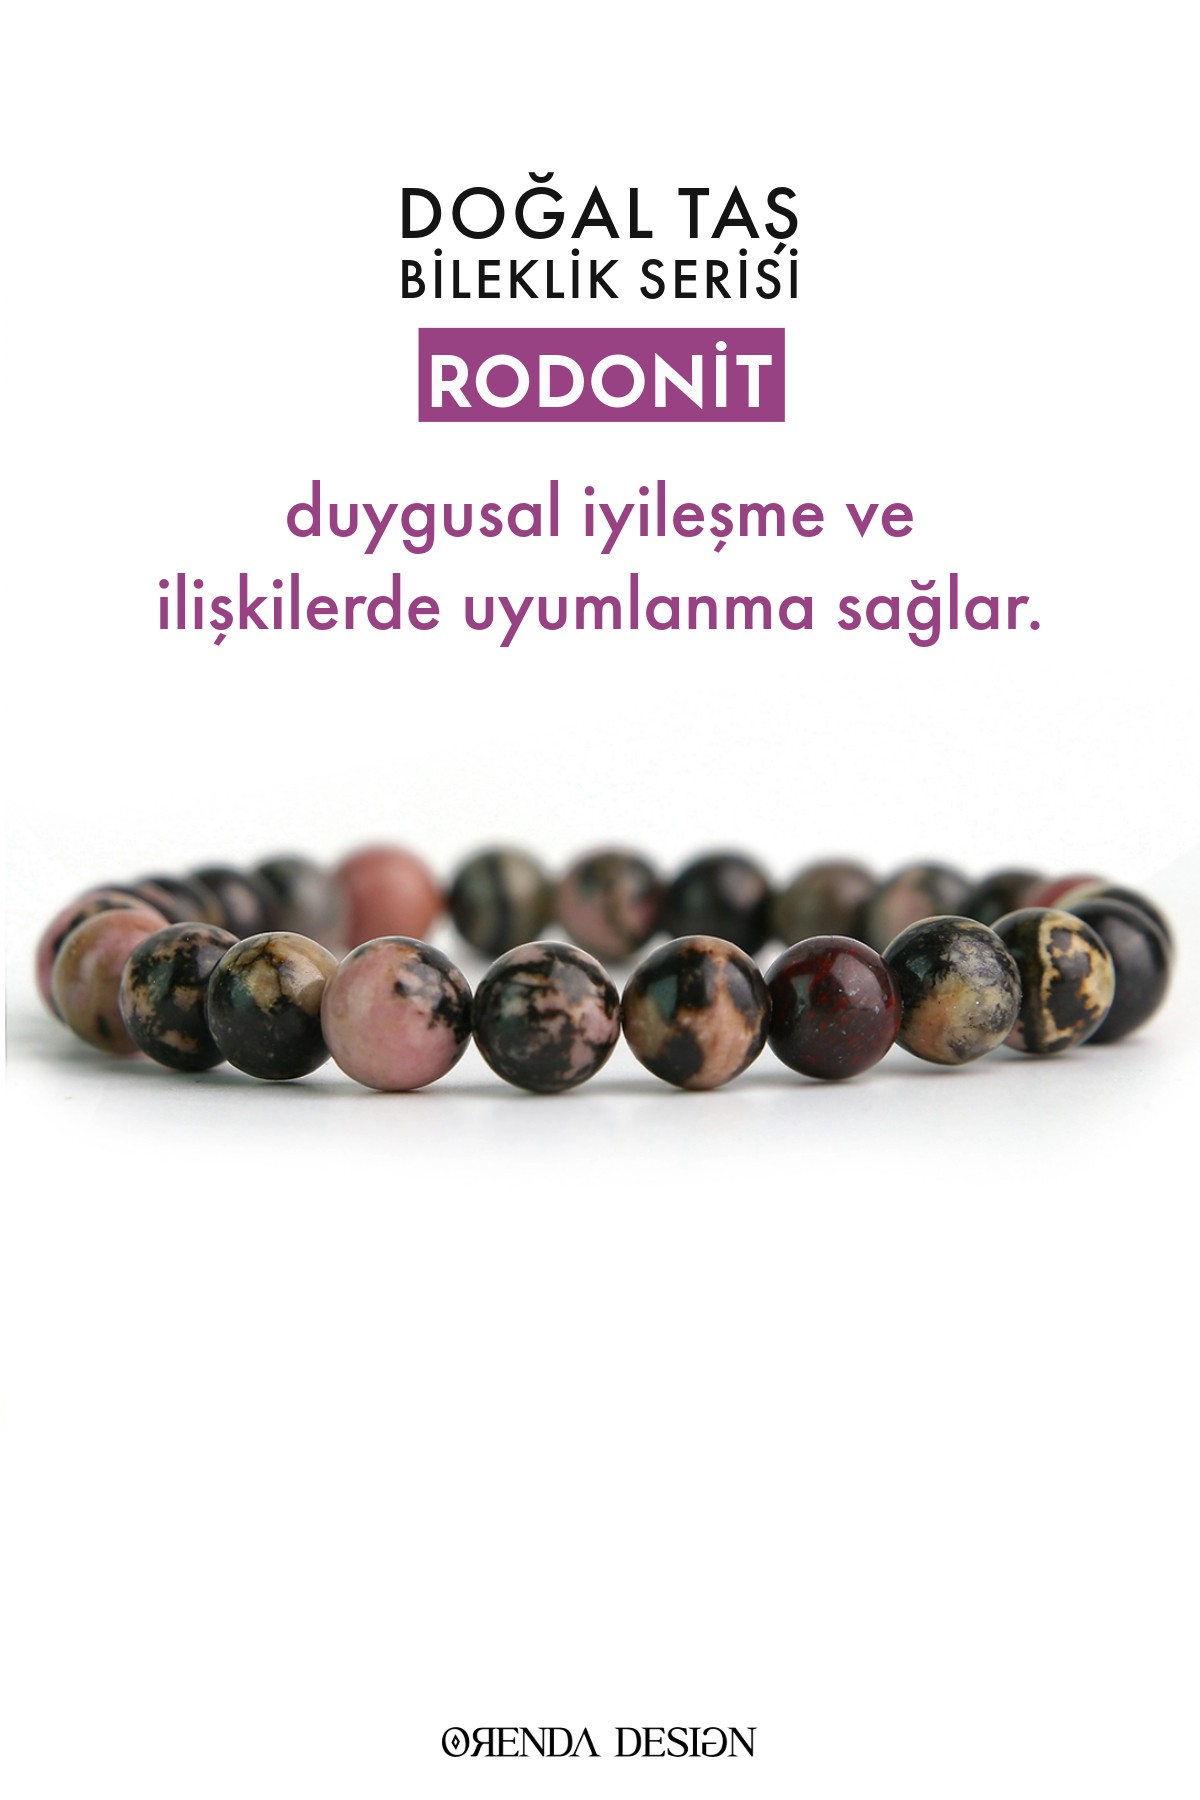 Rodonit Doğal Taş Bileklik (Duygusal İyileşme ve Dengeli İlişkiler)